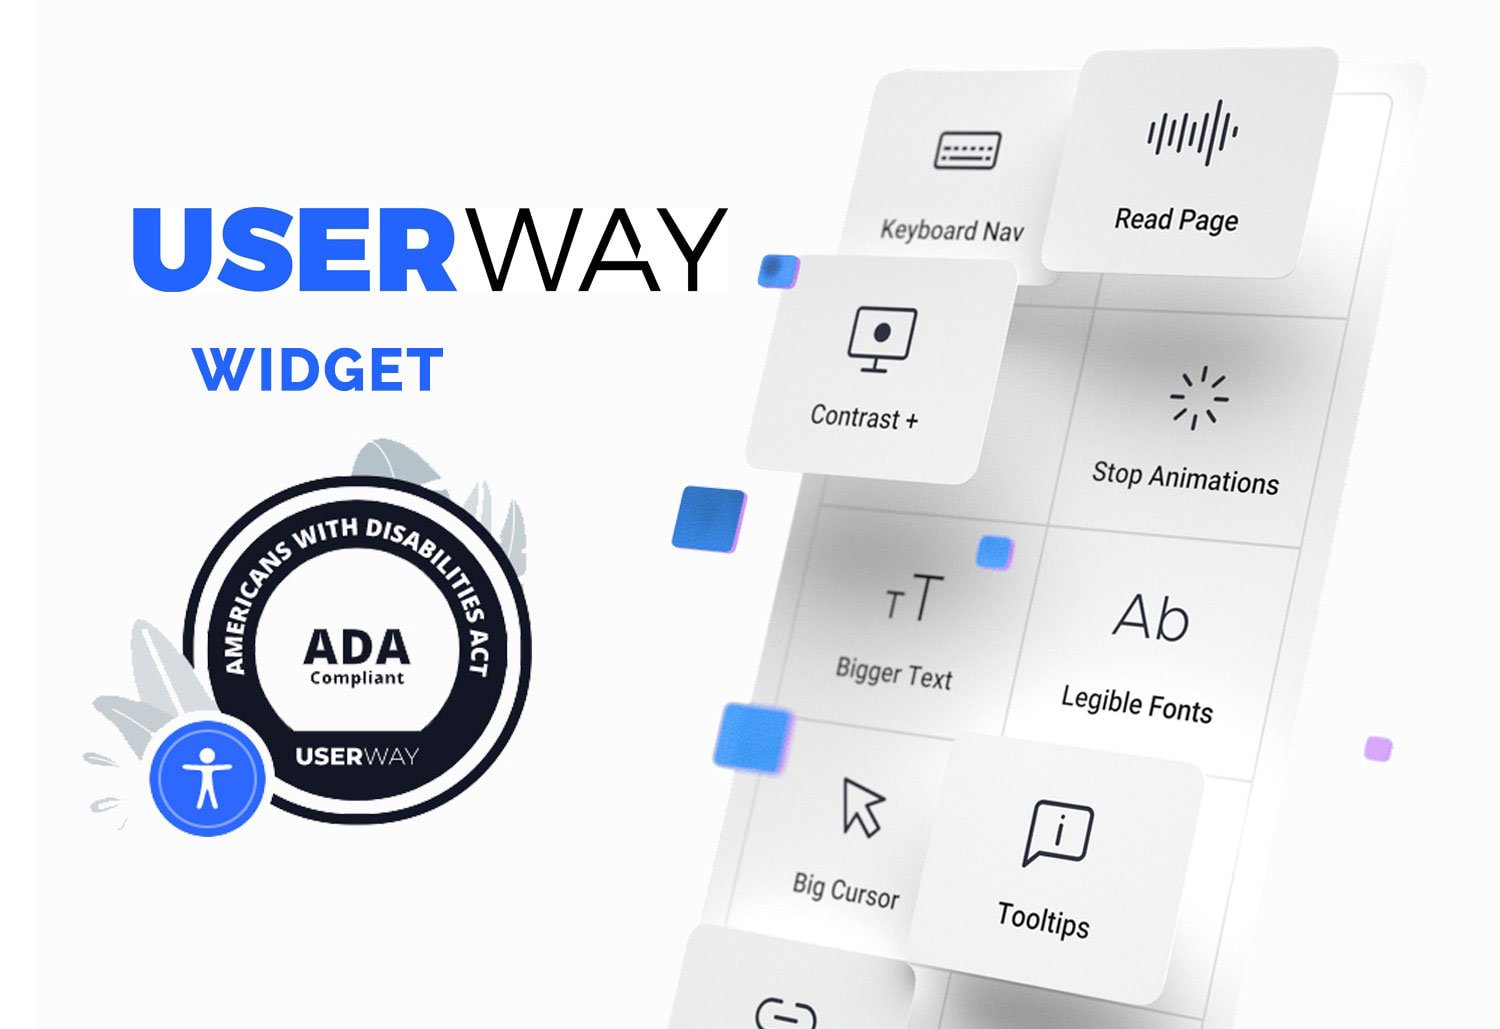 Image of UserWay widget showing ADA compliance